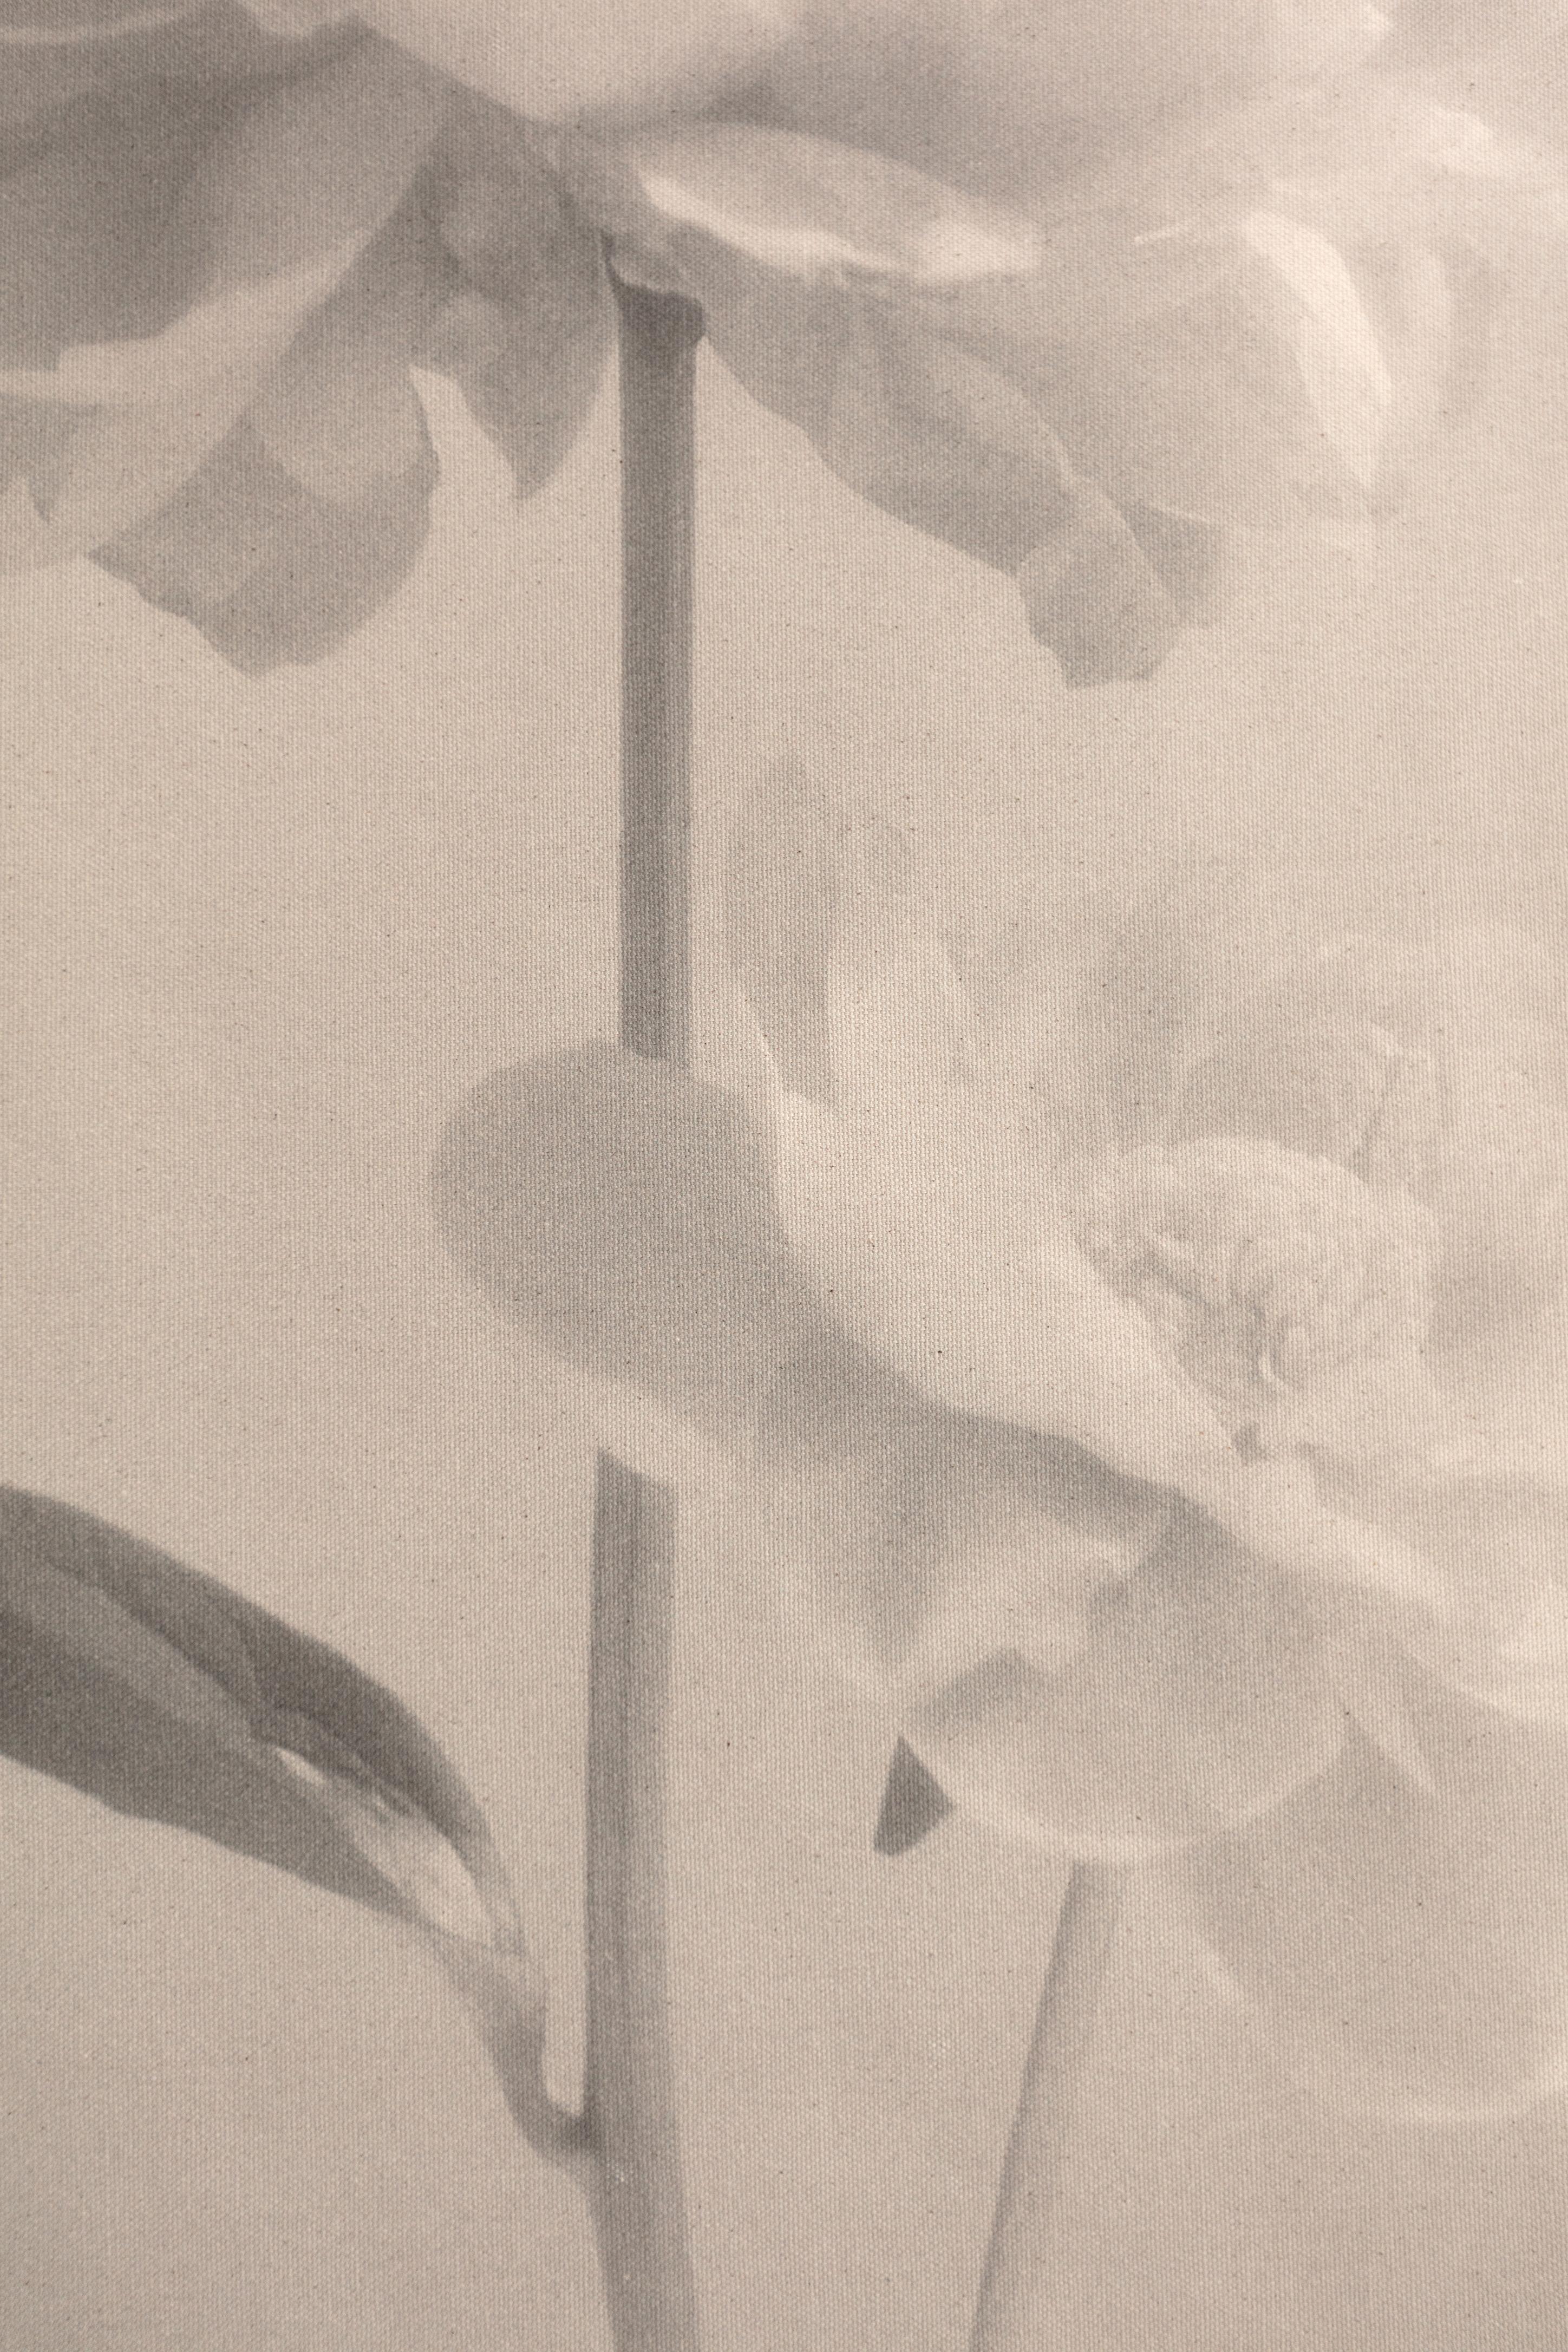 Baumwoll-Leinwandschnörkel „Peony no.2“, Blumenfotografie, limitierte Auflage 2 von 5 Stück (Zeitgenössisch), Photograph, von Ugne Pouwell